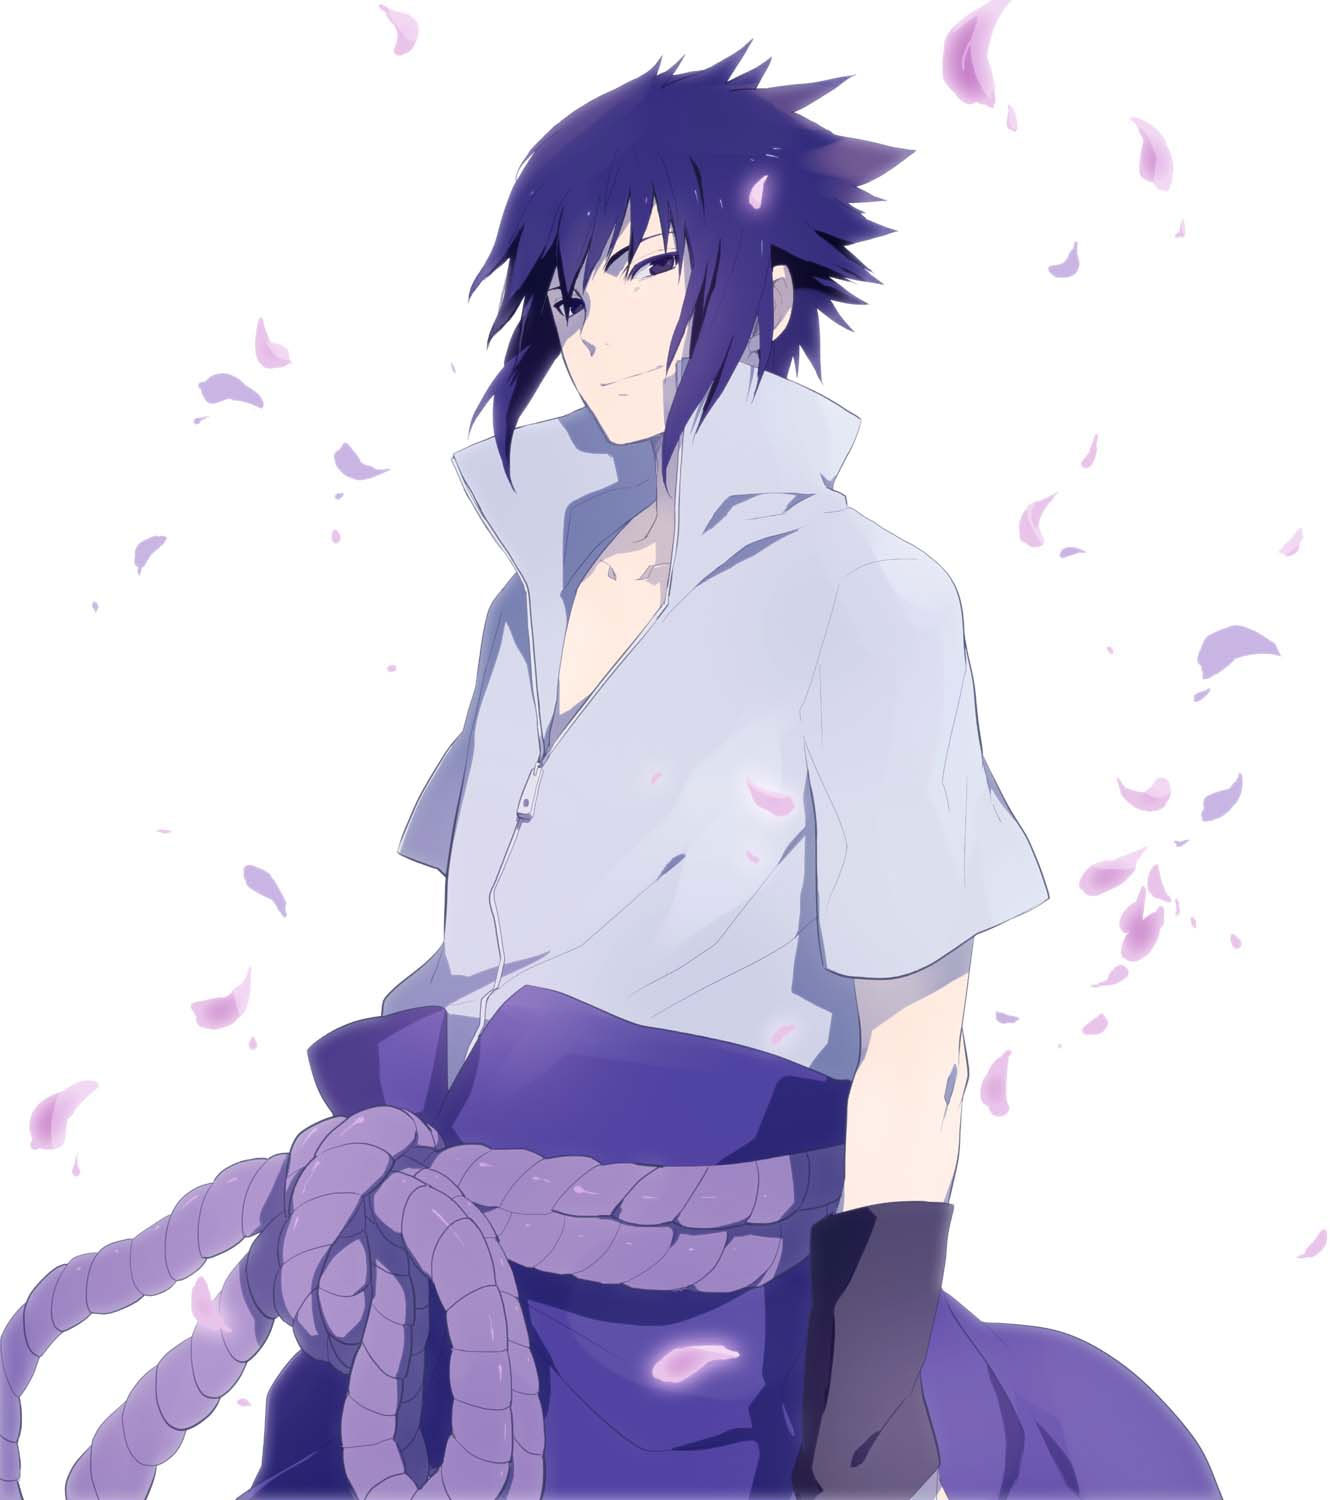 Nếu bạn yêu thích sự nghiệp đi ninja của Sasuke nhưng lại muốn tìm hiểu về những khoảnh khắc buồn của anh chàng này, thì hãy xem ngay ảnh Sasuke buồn để cảm nhận được niềm đau và hoài niệm trong lòng anh.